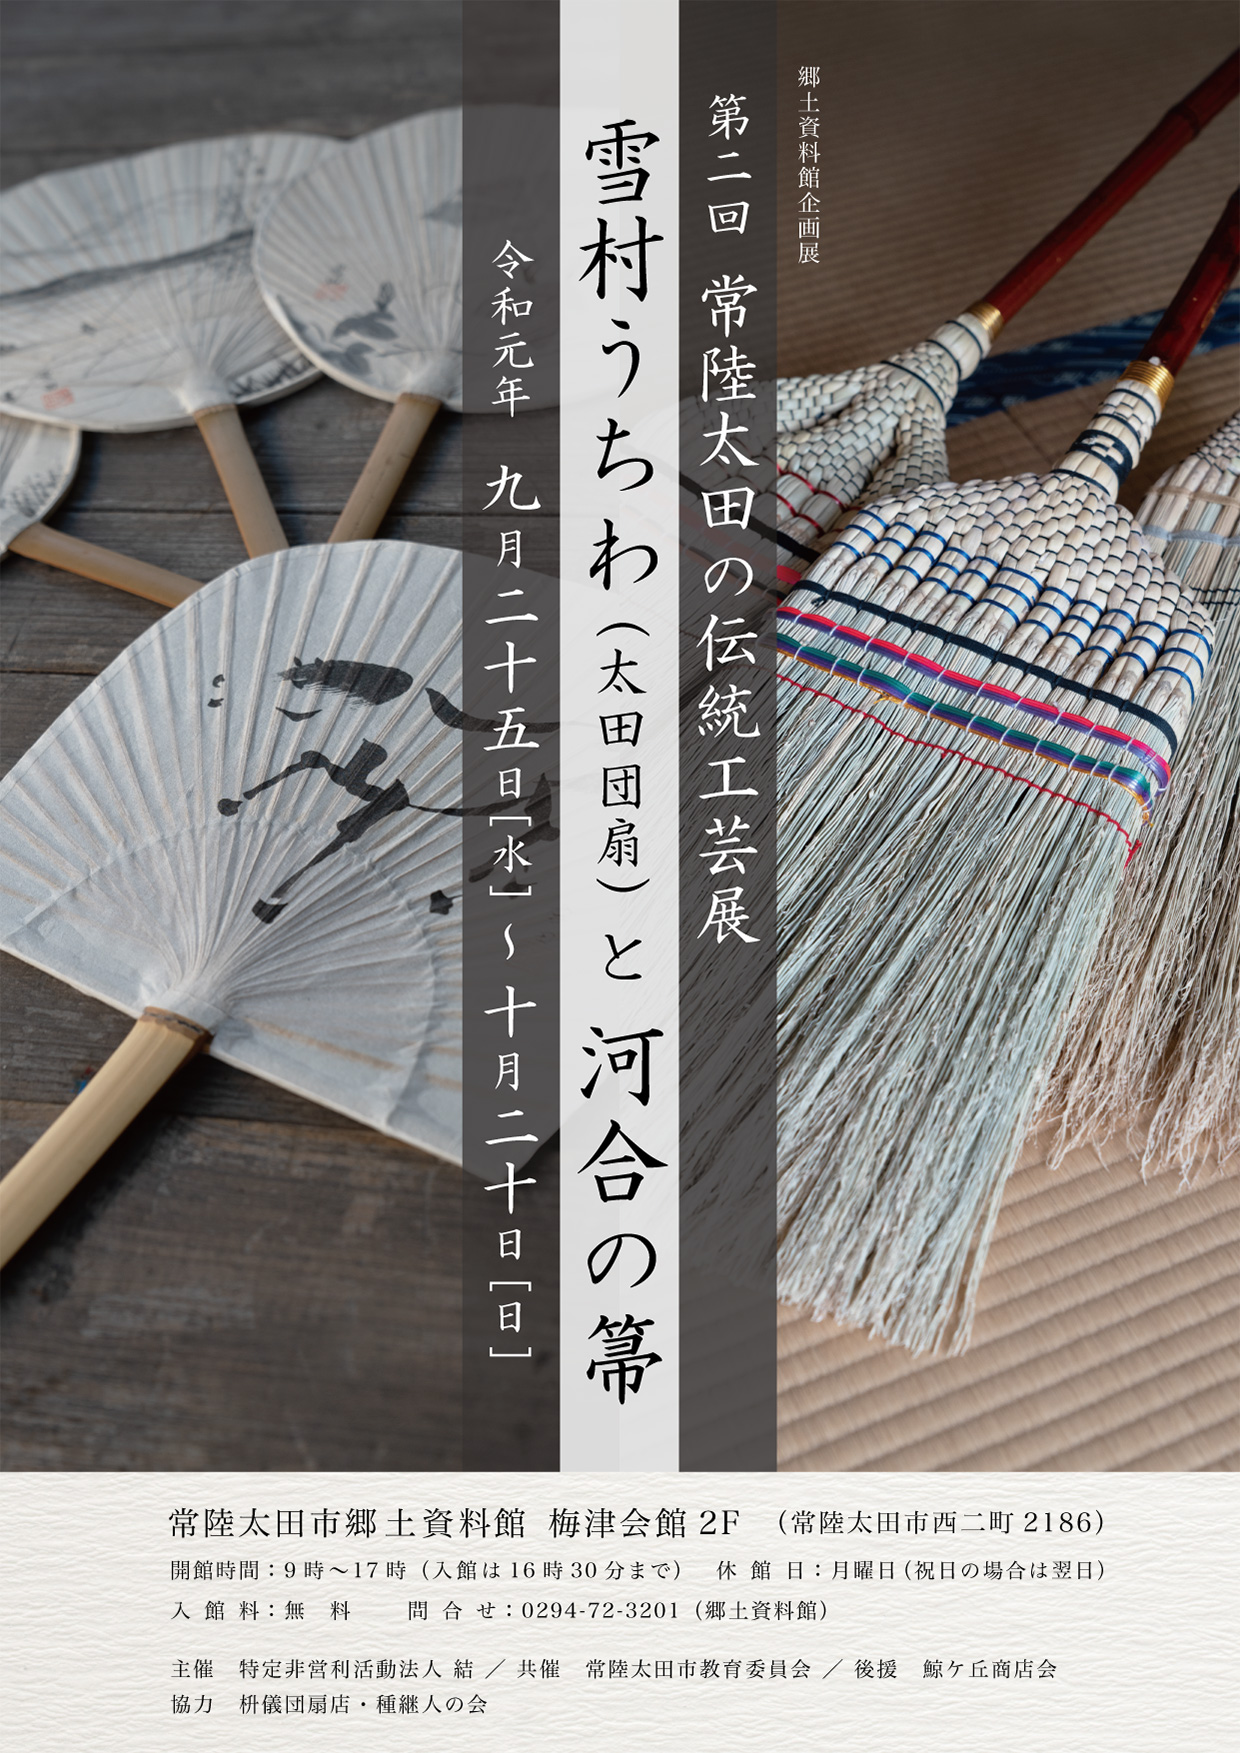 第二回常陸太田の伝統工芸展「雪村うちわ（太田団扇）と河合の箒」